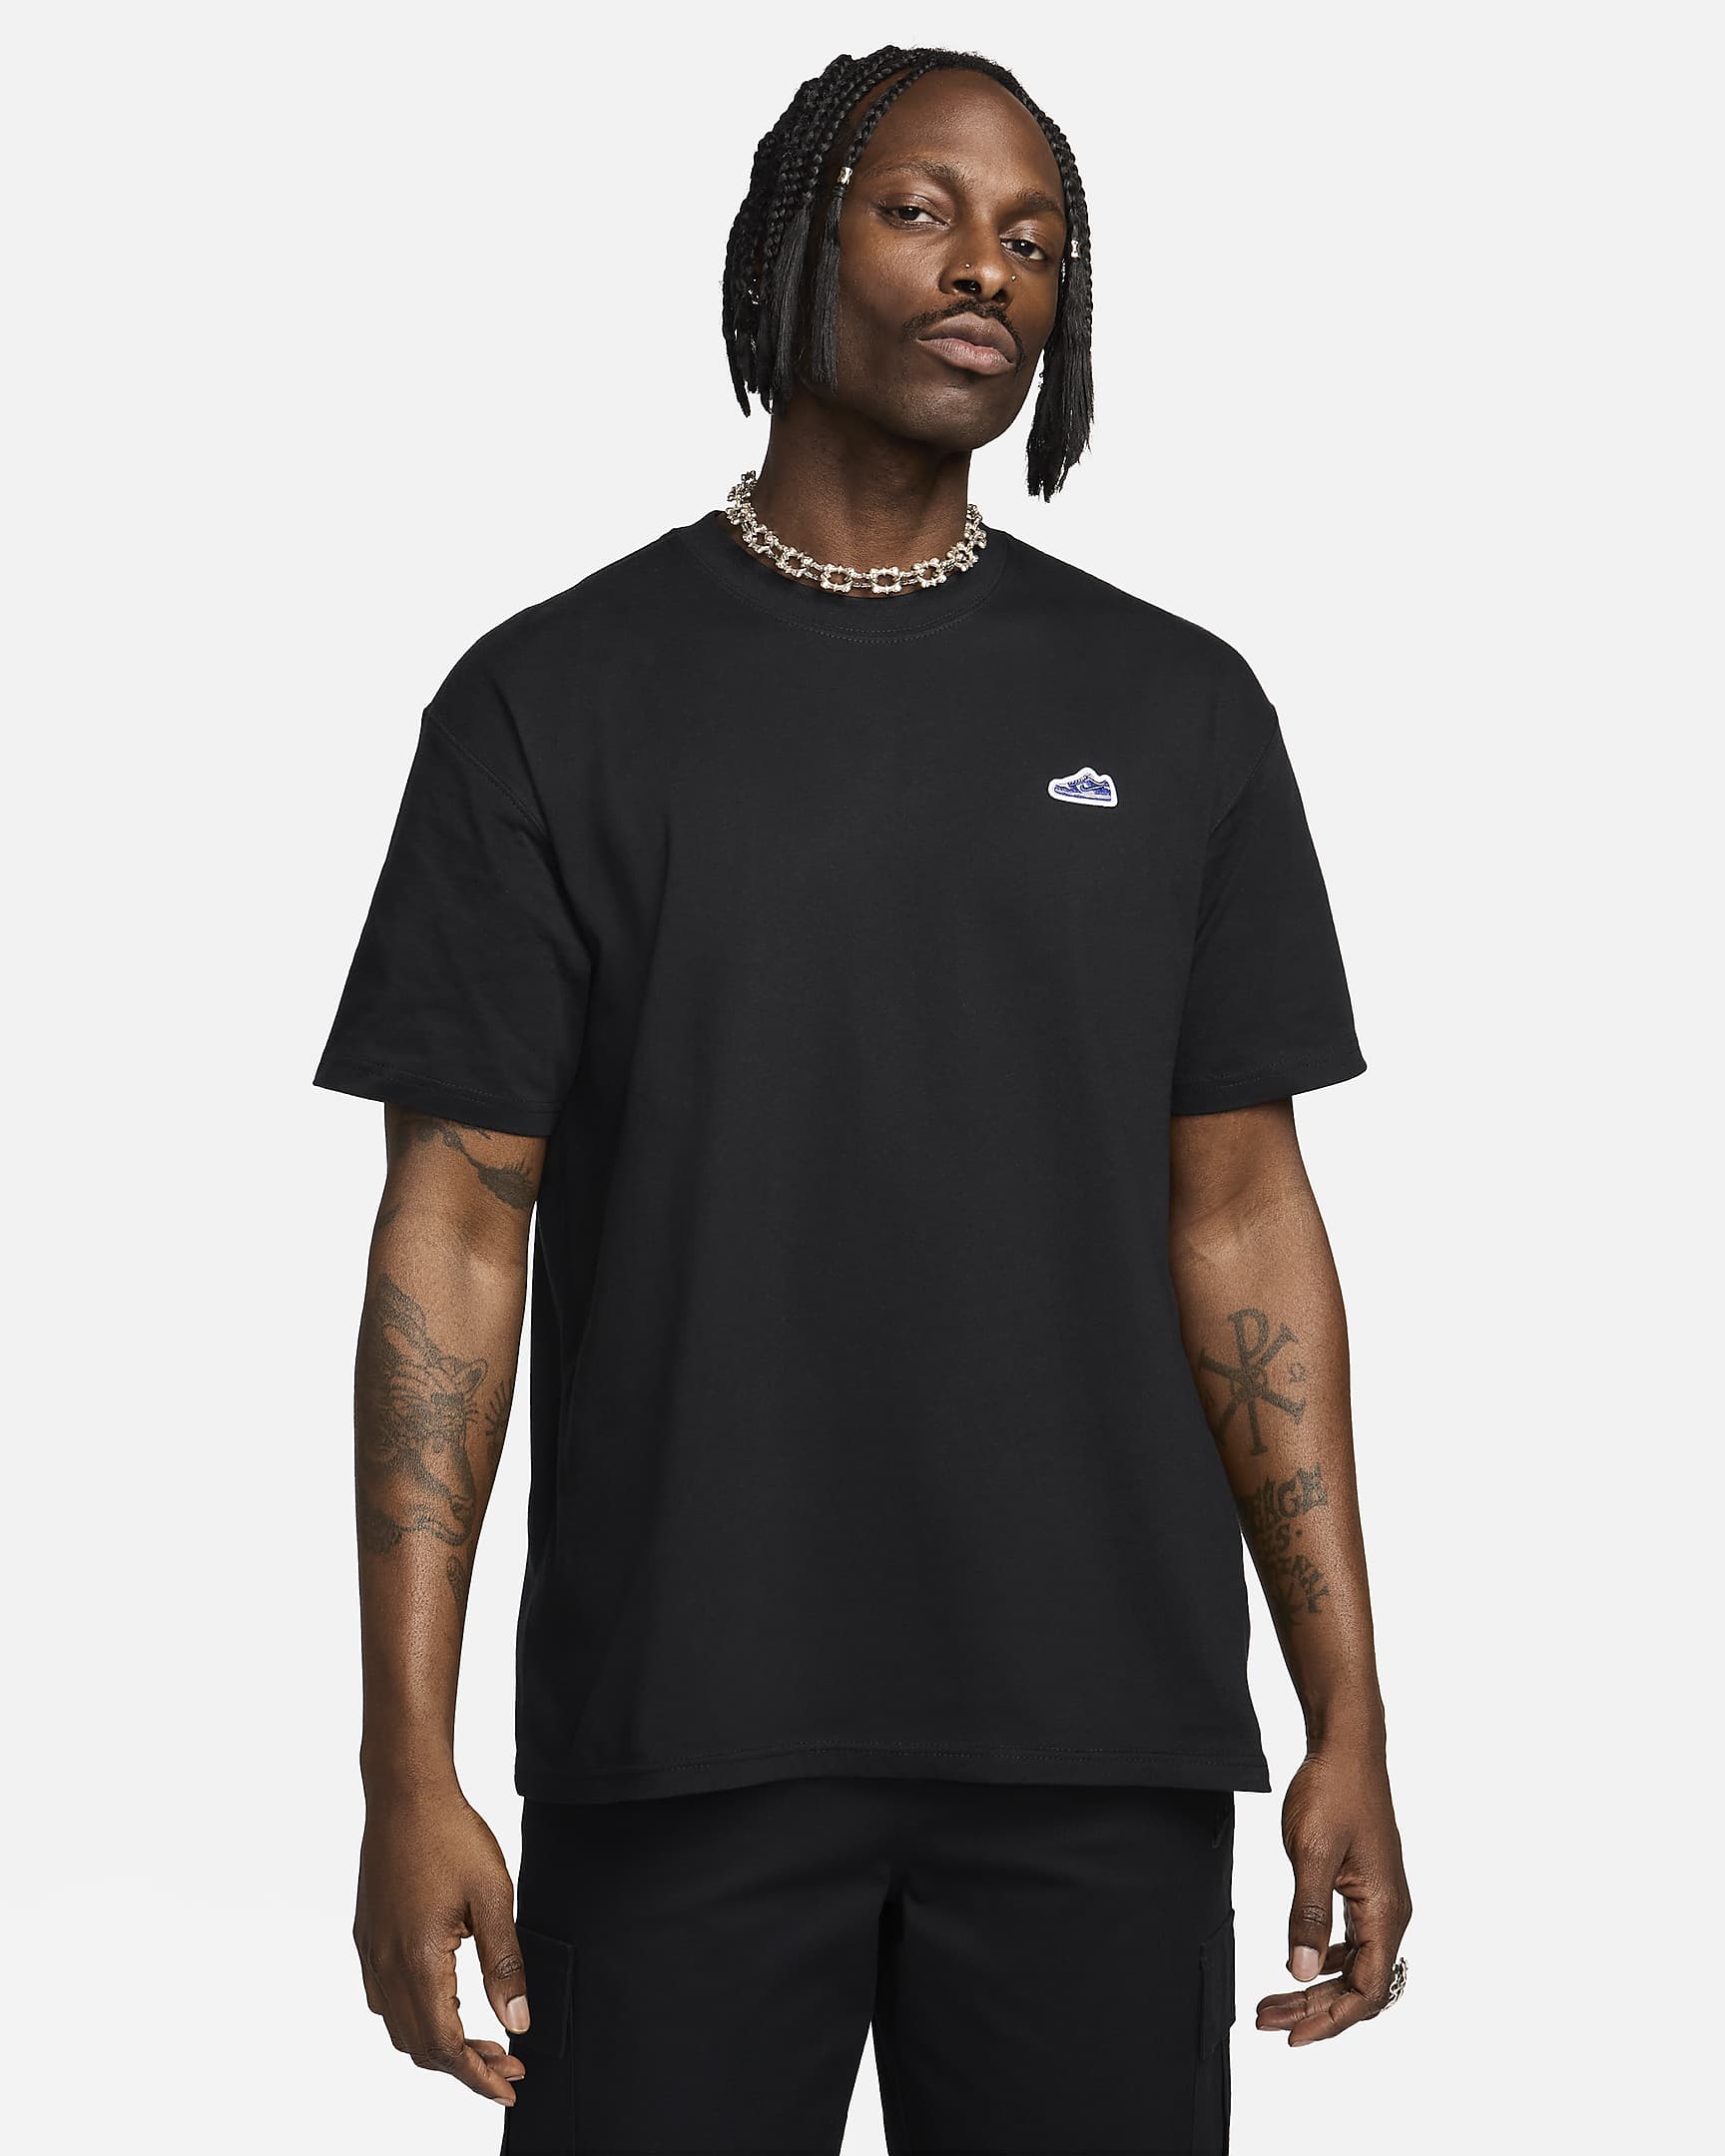 T-shirt Nike Sportswear para homem - Preto